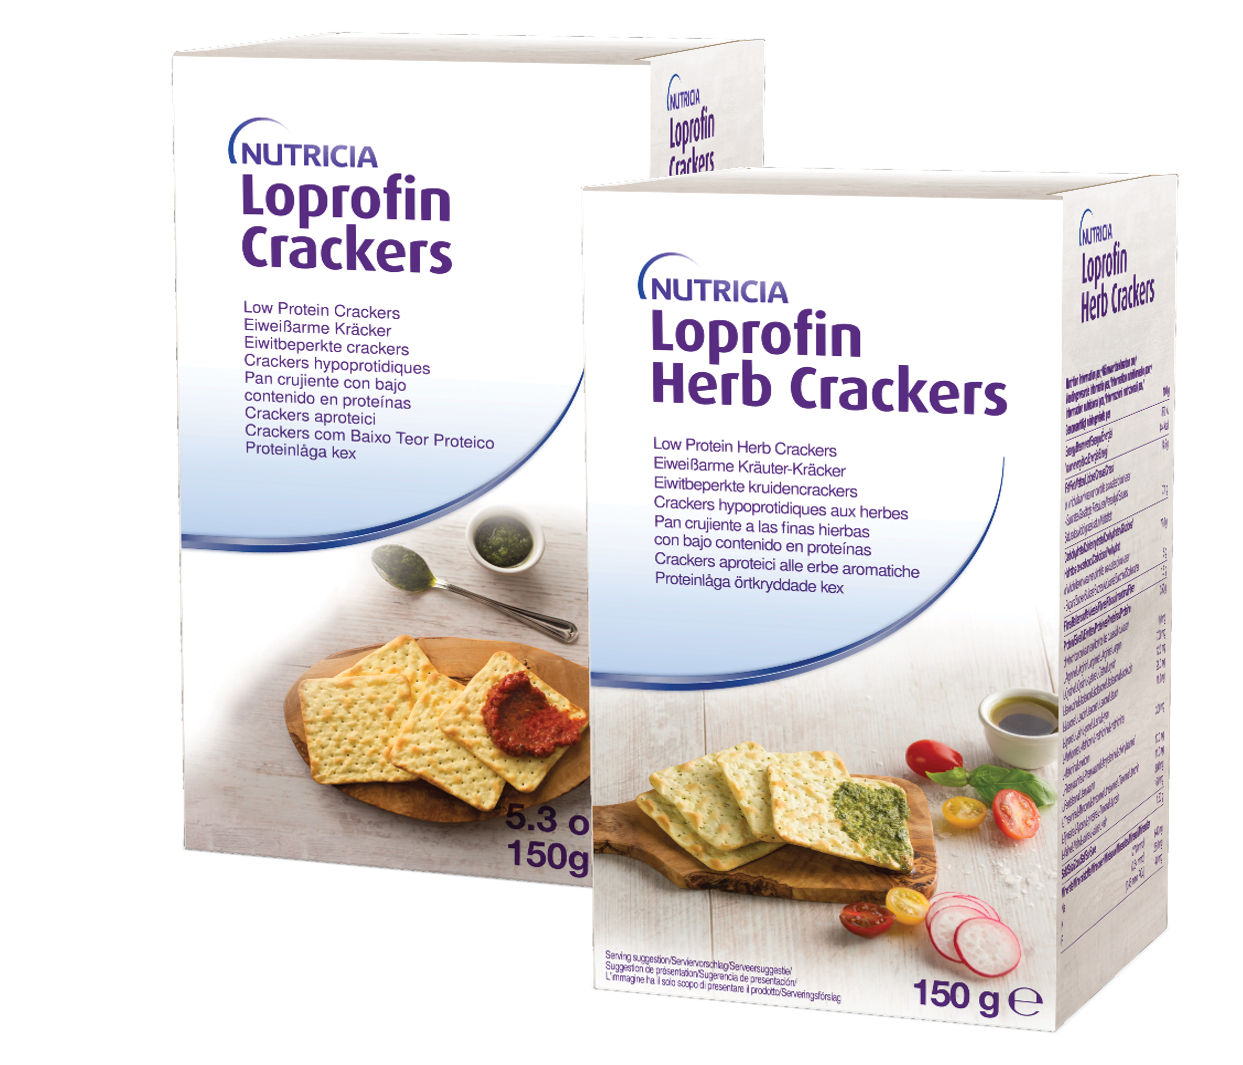 Loprofin Crackers packshots